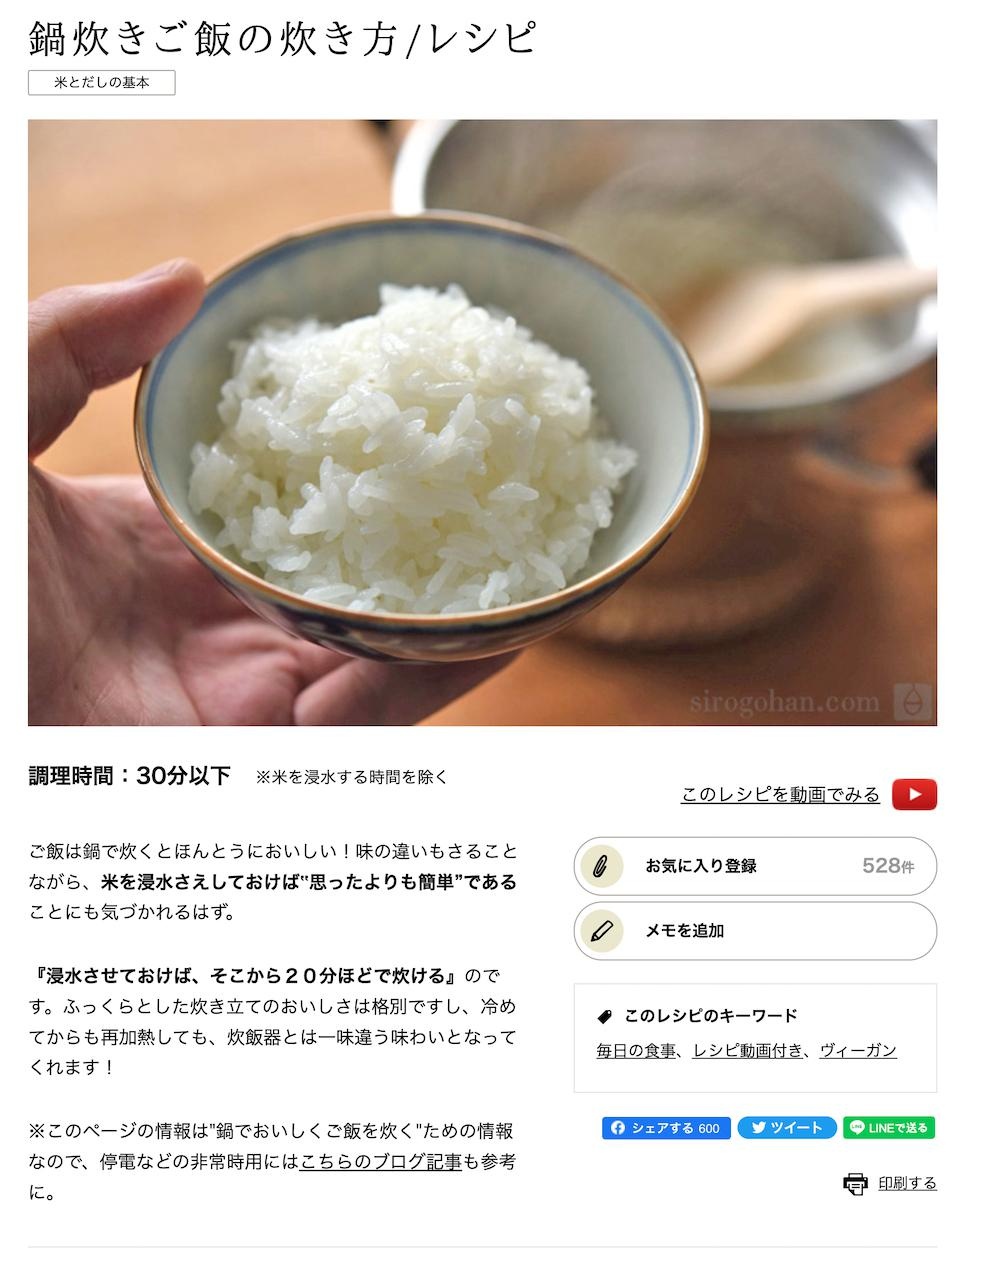 「白ごはん.com」のPVが飛躍的に伸びるきっかけとなった「鍋炊きご飯の炊き方」(一部抜粋)